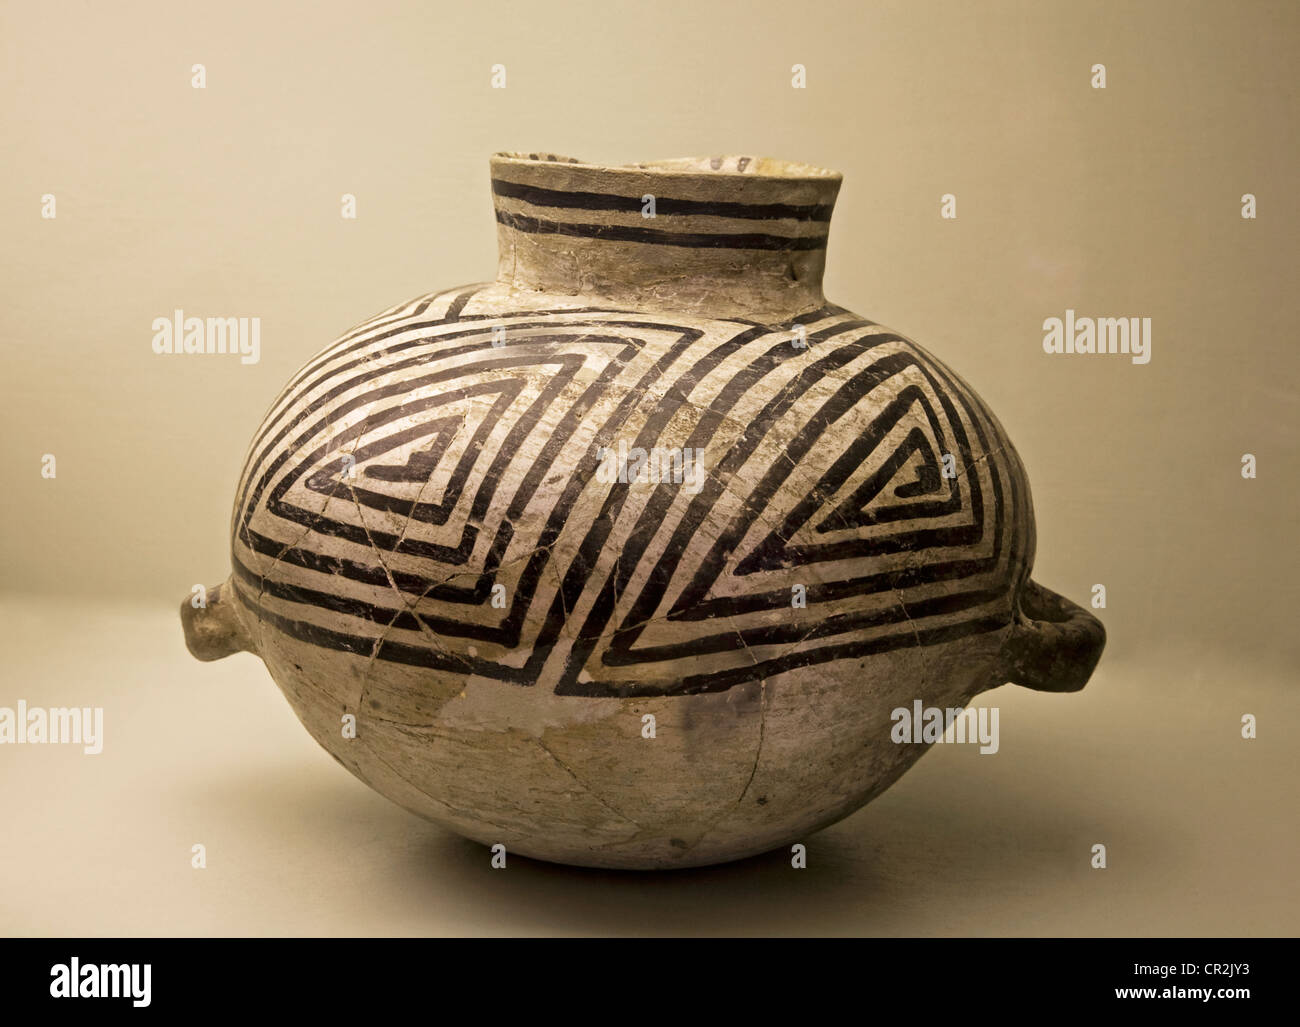 Whitesare Anasazi Keramik aus Azteken Ruinen National Monument, New Mexico, wahrscheinlich irgendwann nach 1000 n. Chr. gemacht Stockfoto